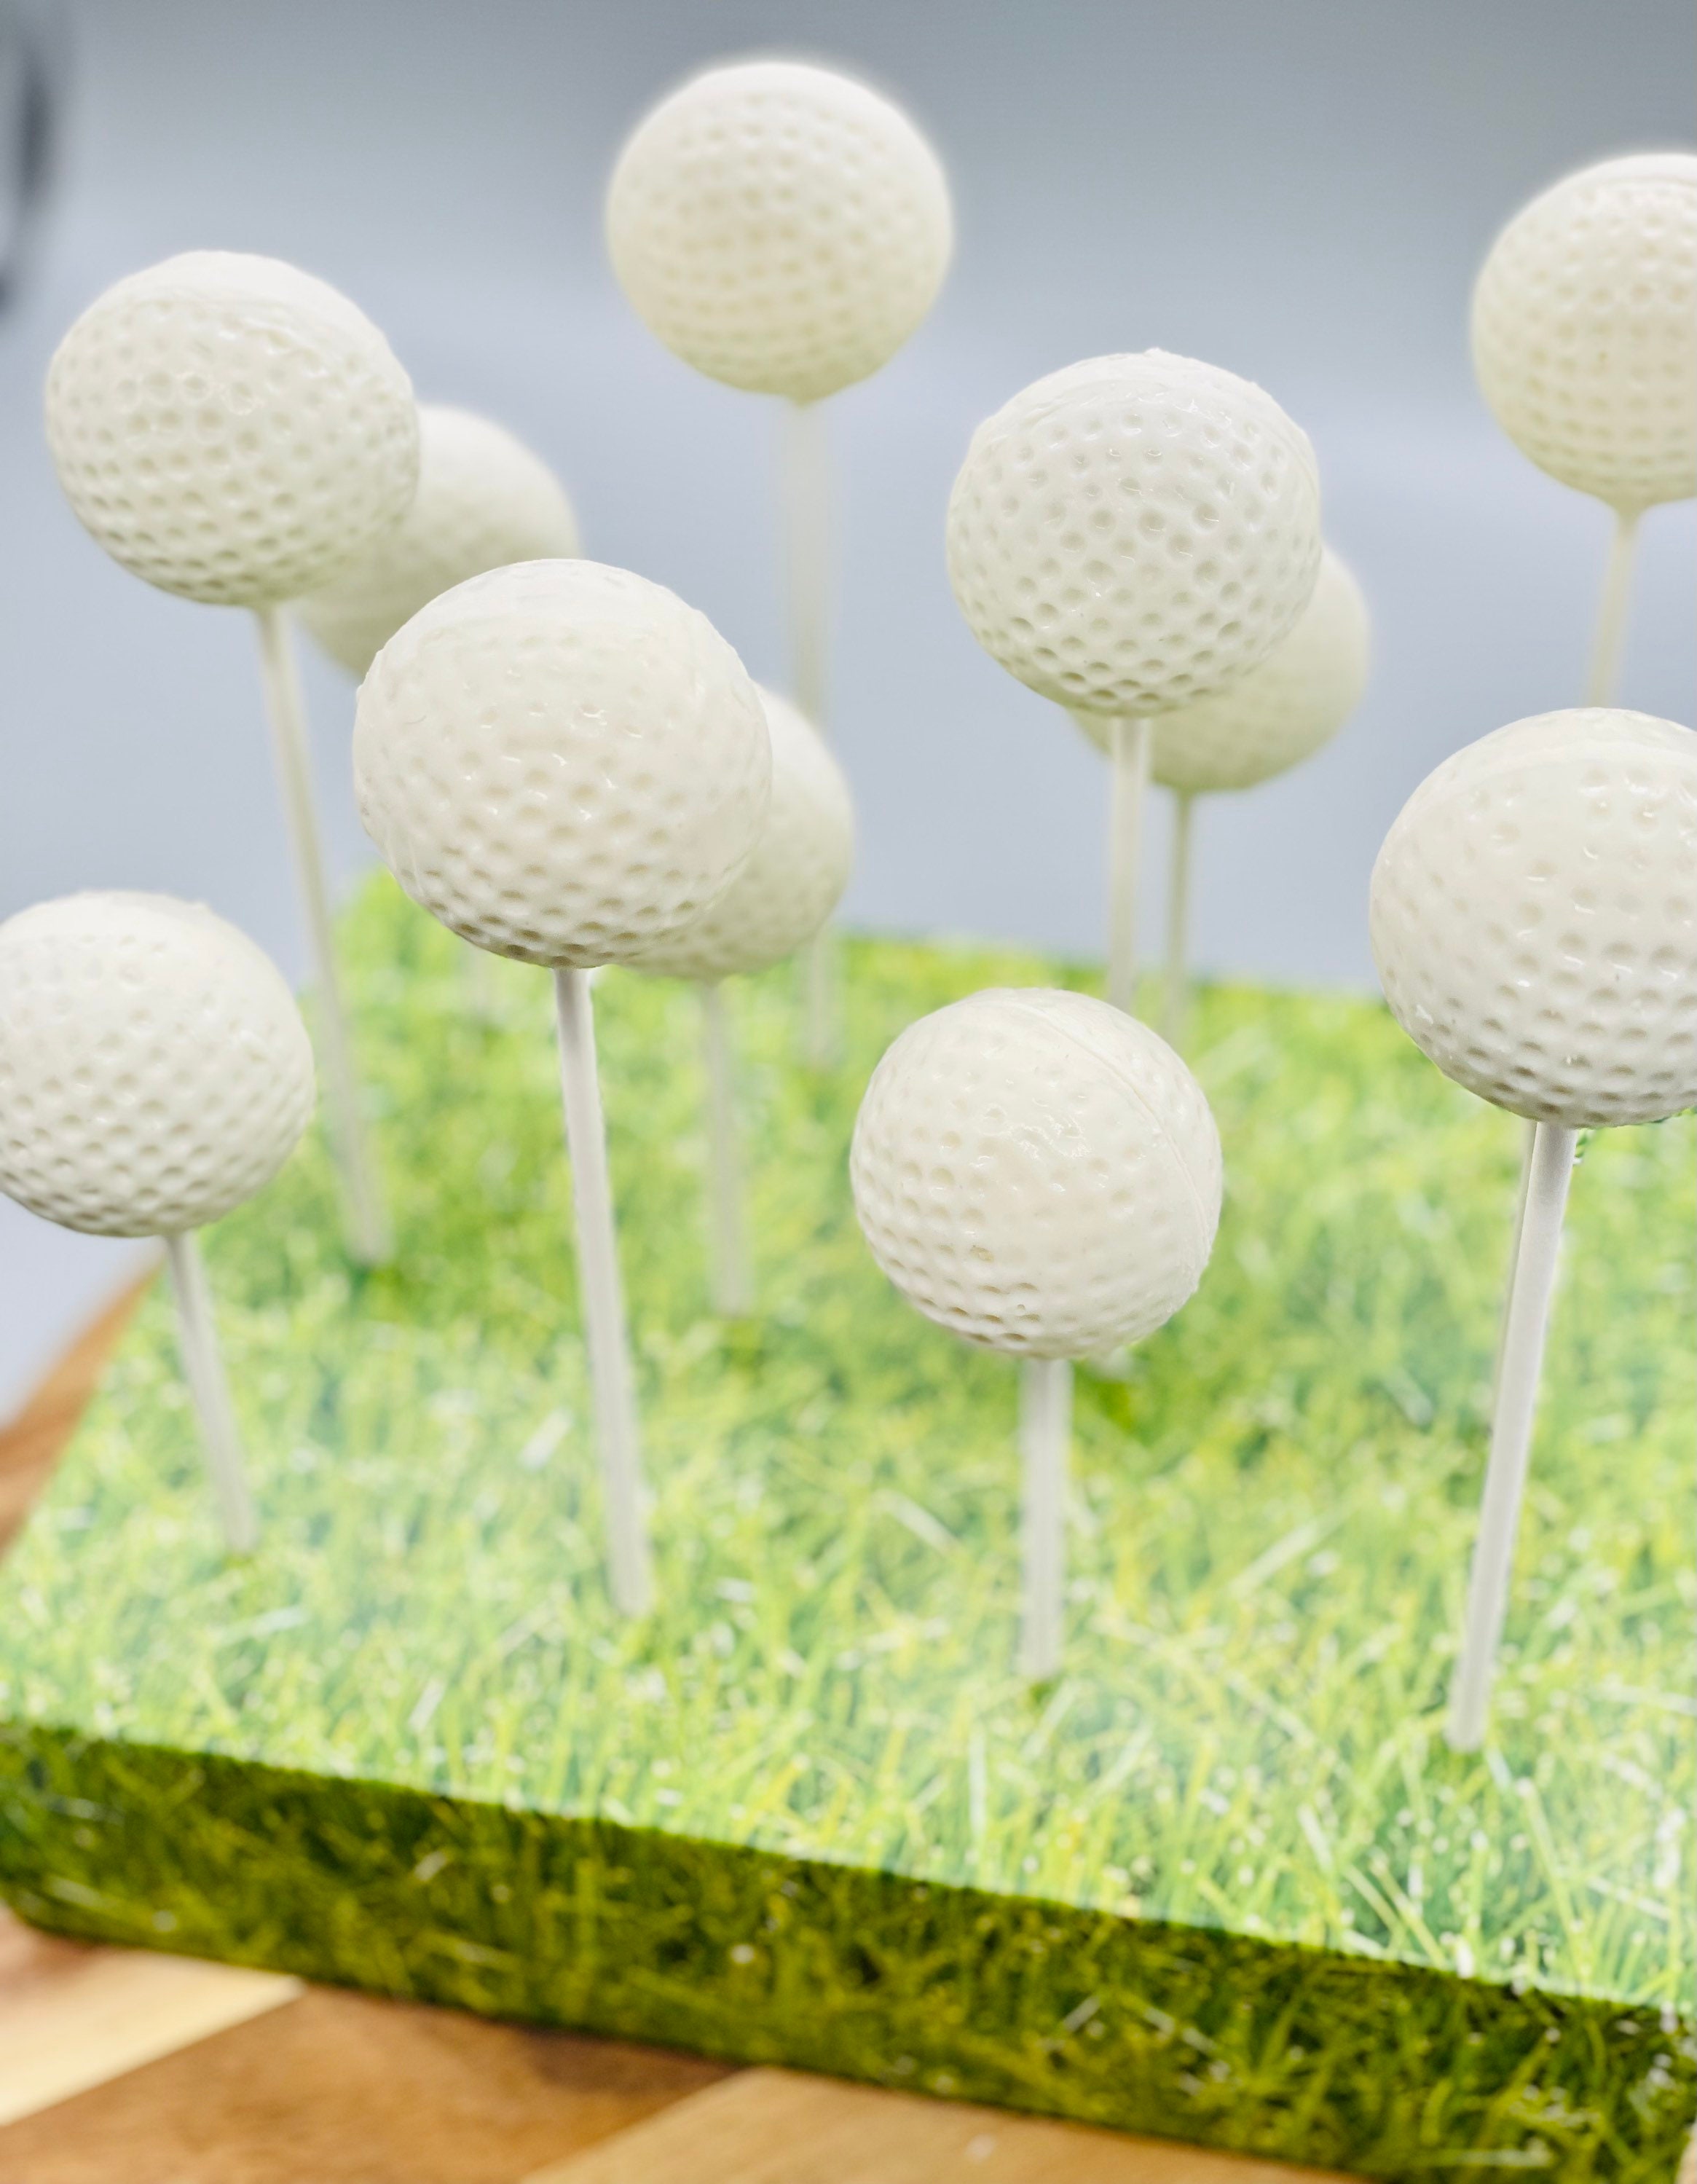 i heart baking!: golf ball cake pops